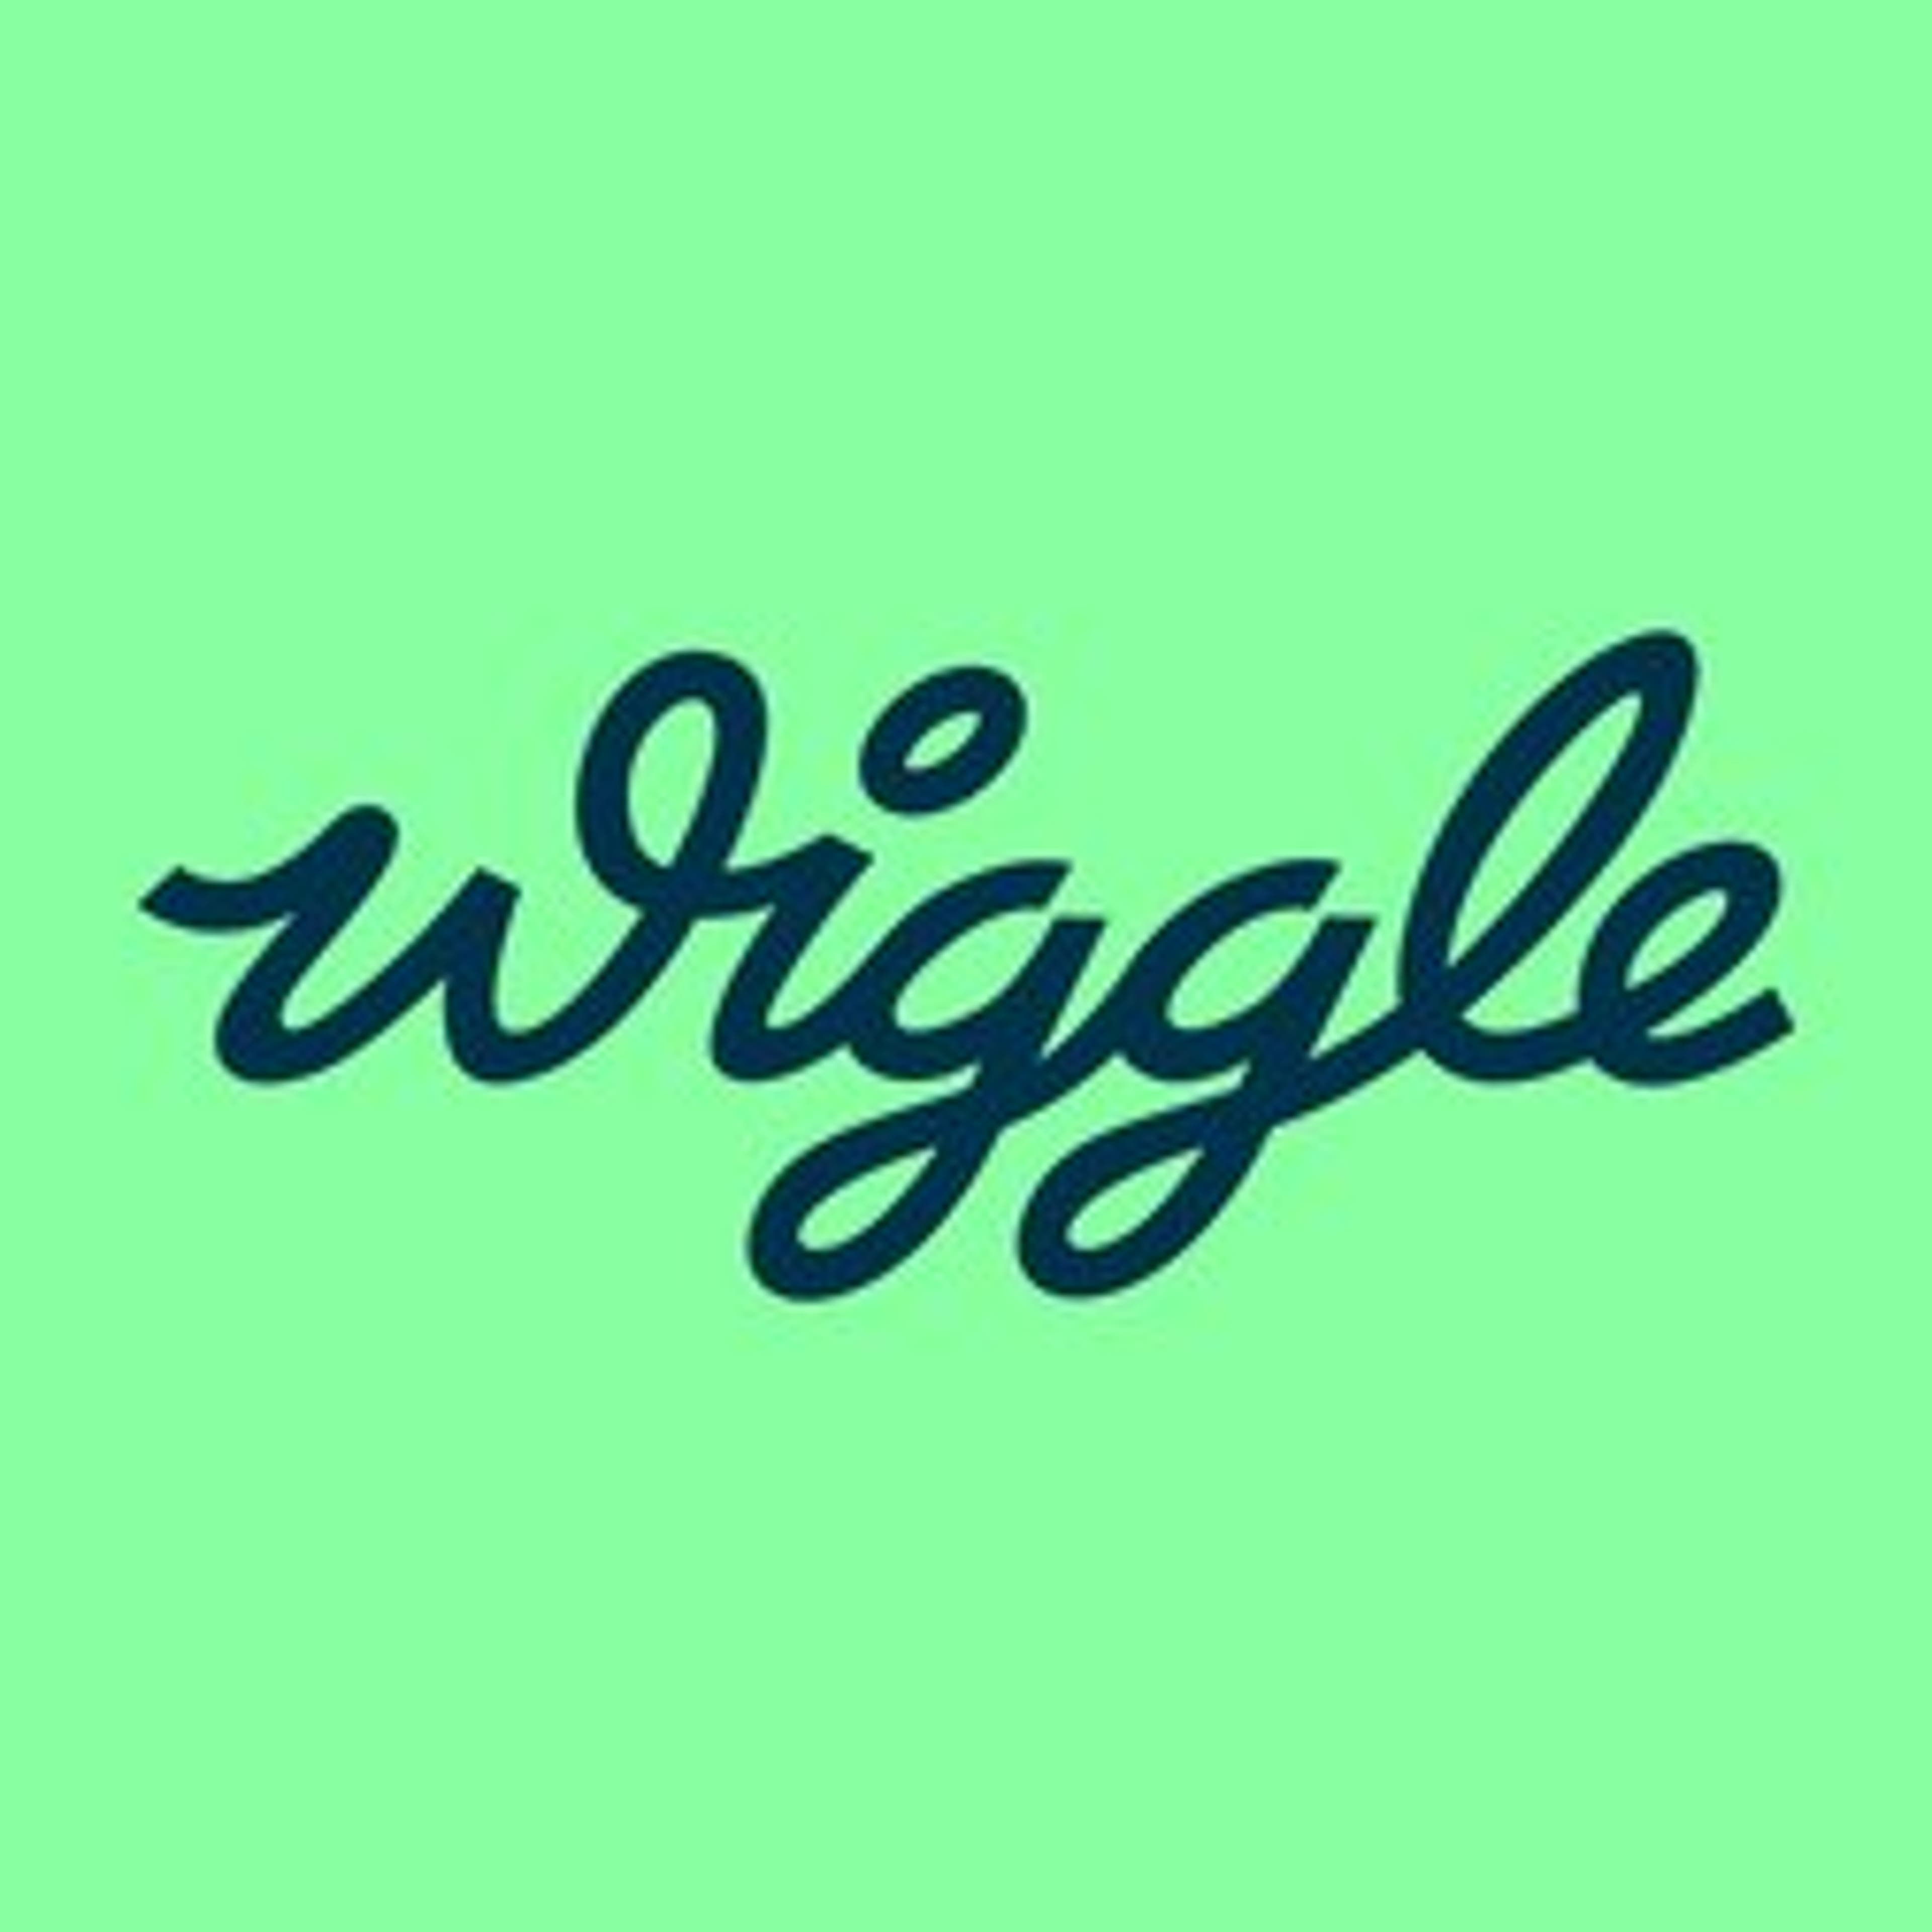  Wiggle 